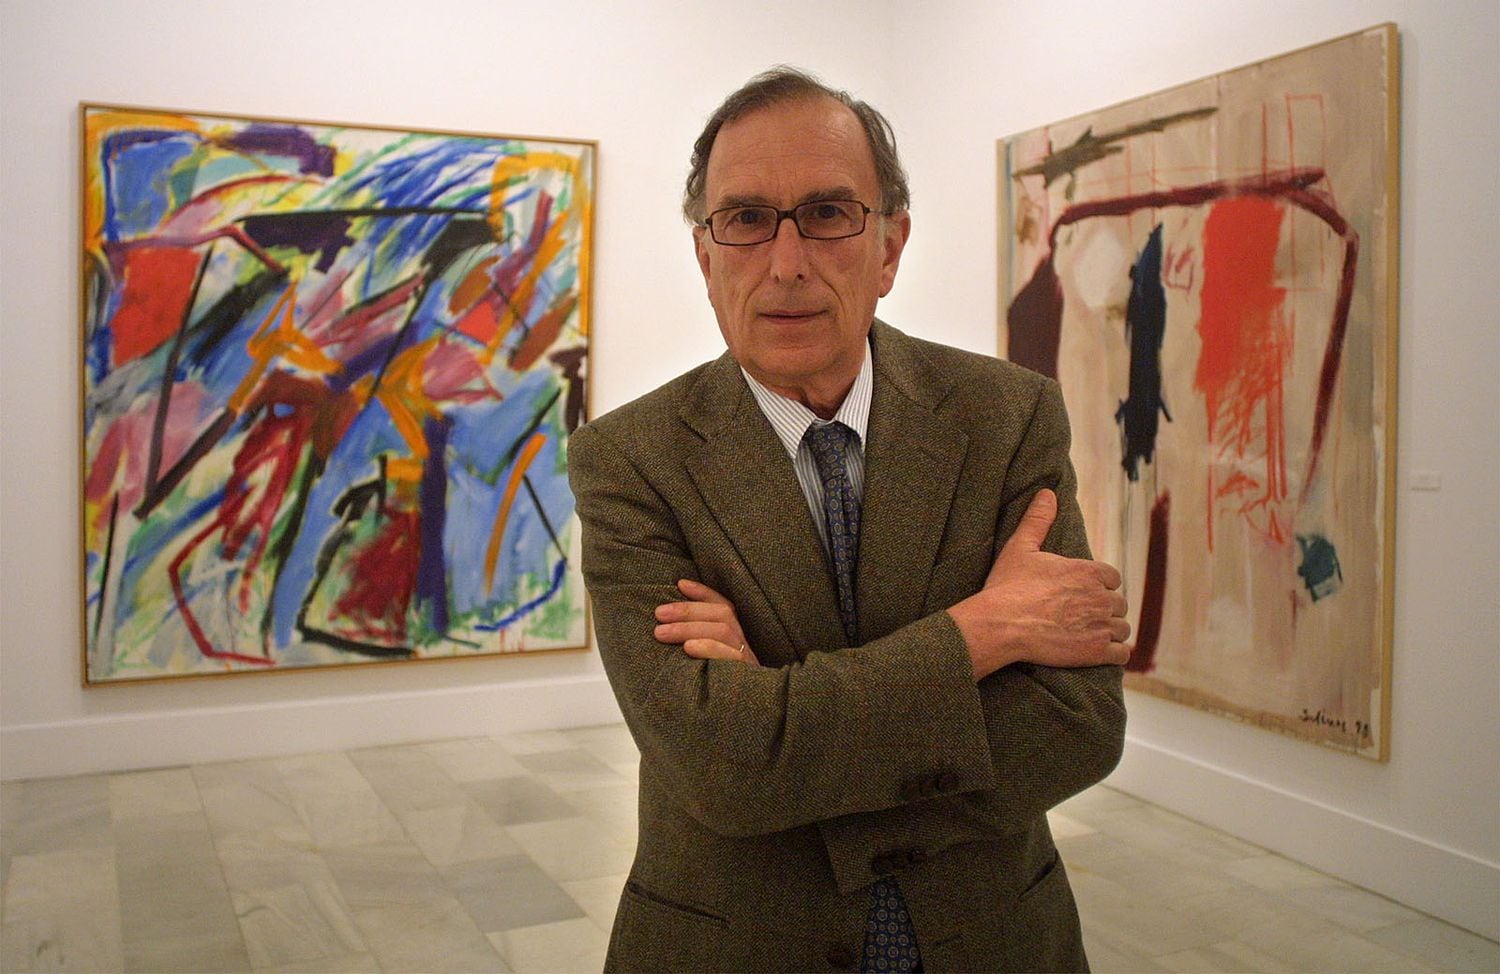 El pintor abstracto Manuel Salinas posa ante dos de sus pinturas en la exposición sobre su obra en la sala Chicarreros de Sevilla, en 2003.